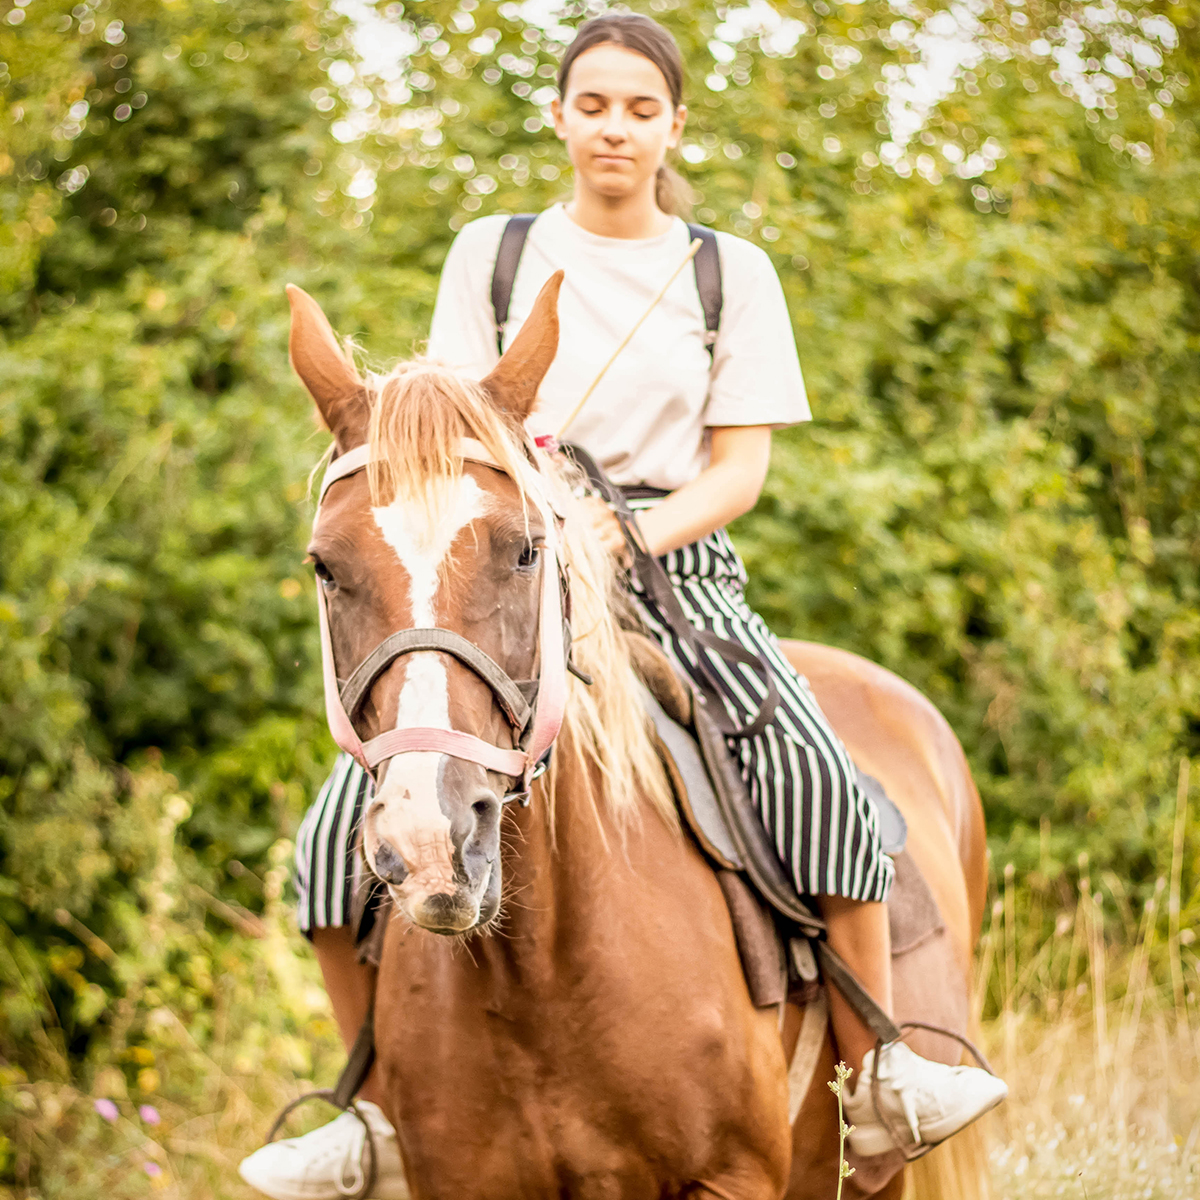  девушка на лошади, активный отдых, катание на лошади в Анапе, конные прогулки, конный прокат в Анапе